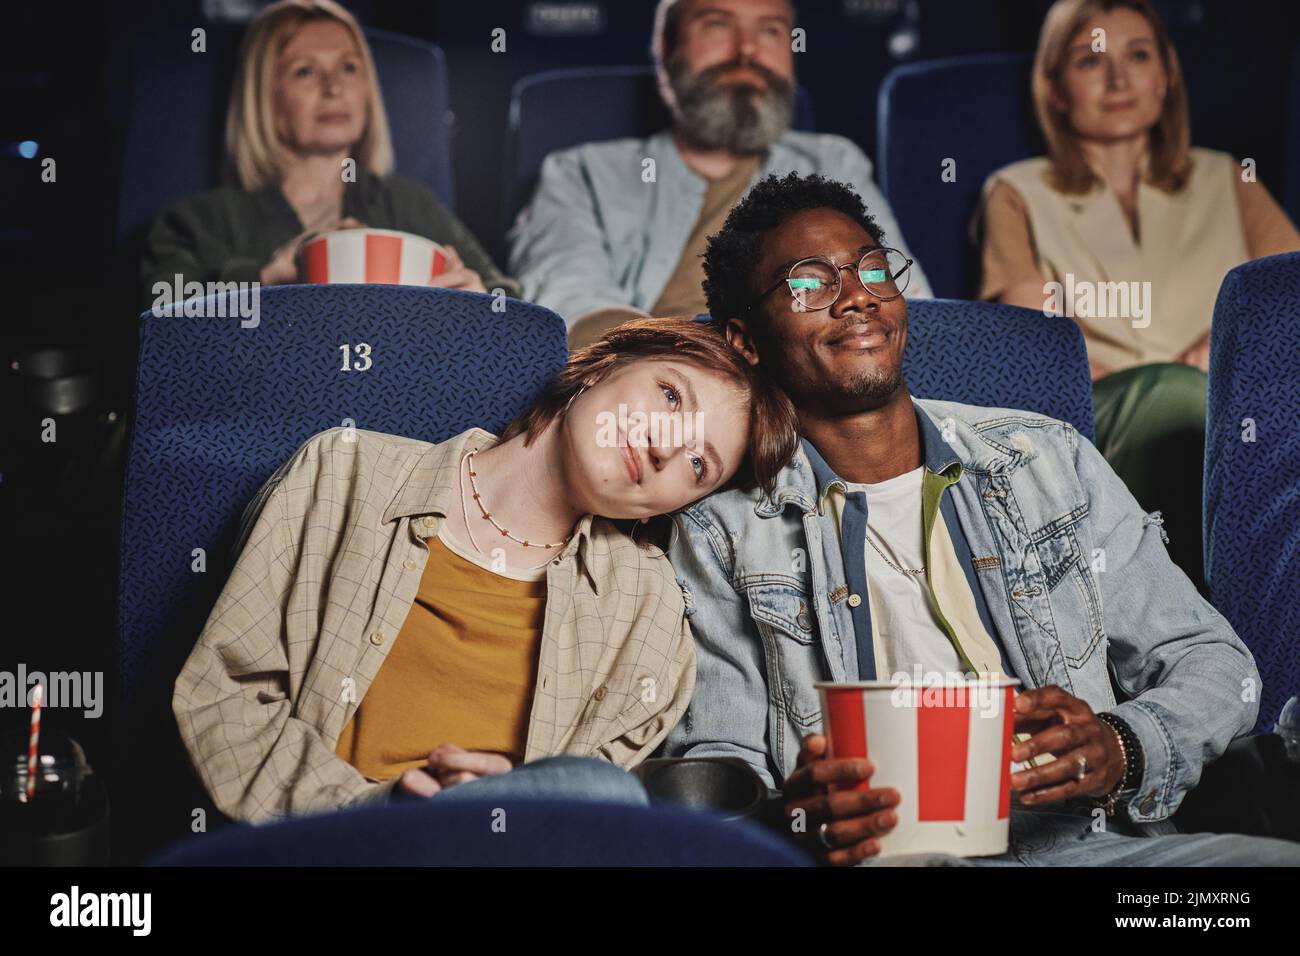 Retrato de una moderna pareja joven, étnicamente diversa, pasando la noche en el cine Foto de stock